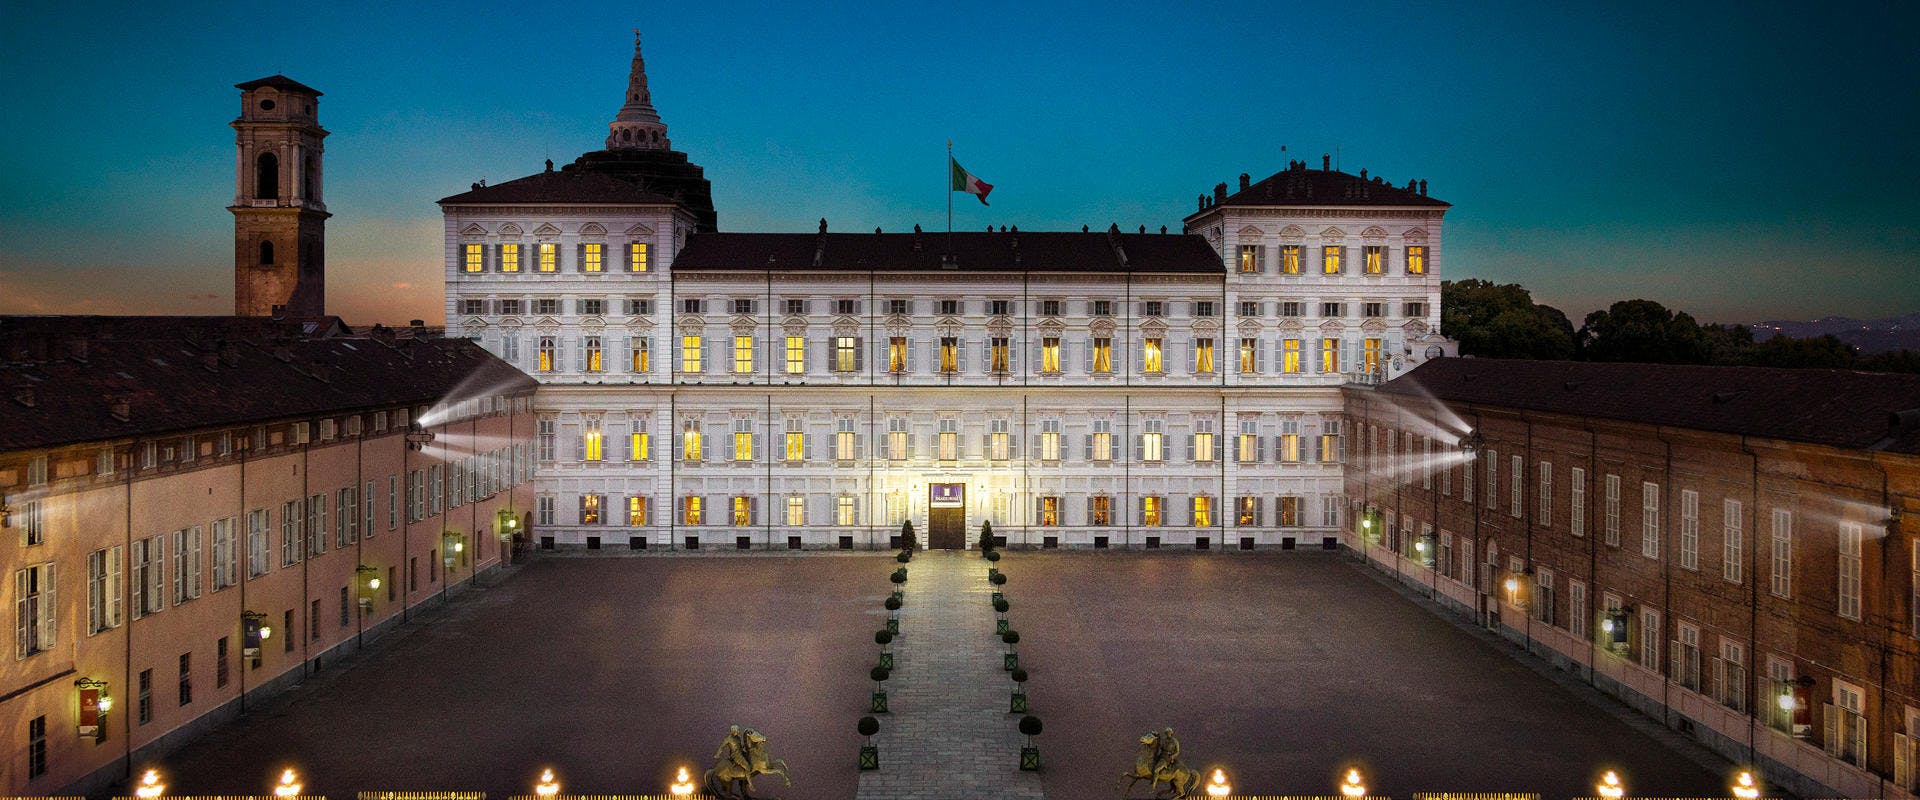 Visita guiada ao Palácio Real de Torino com entrada sem filas